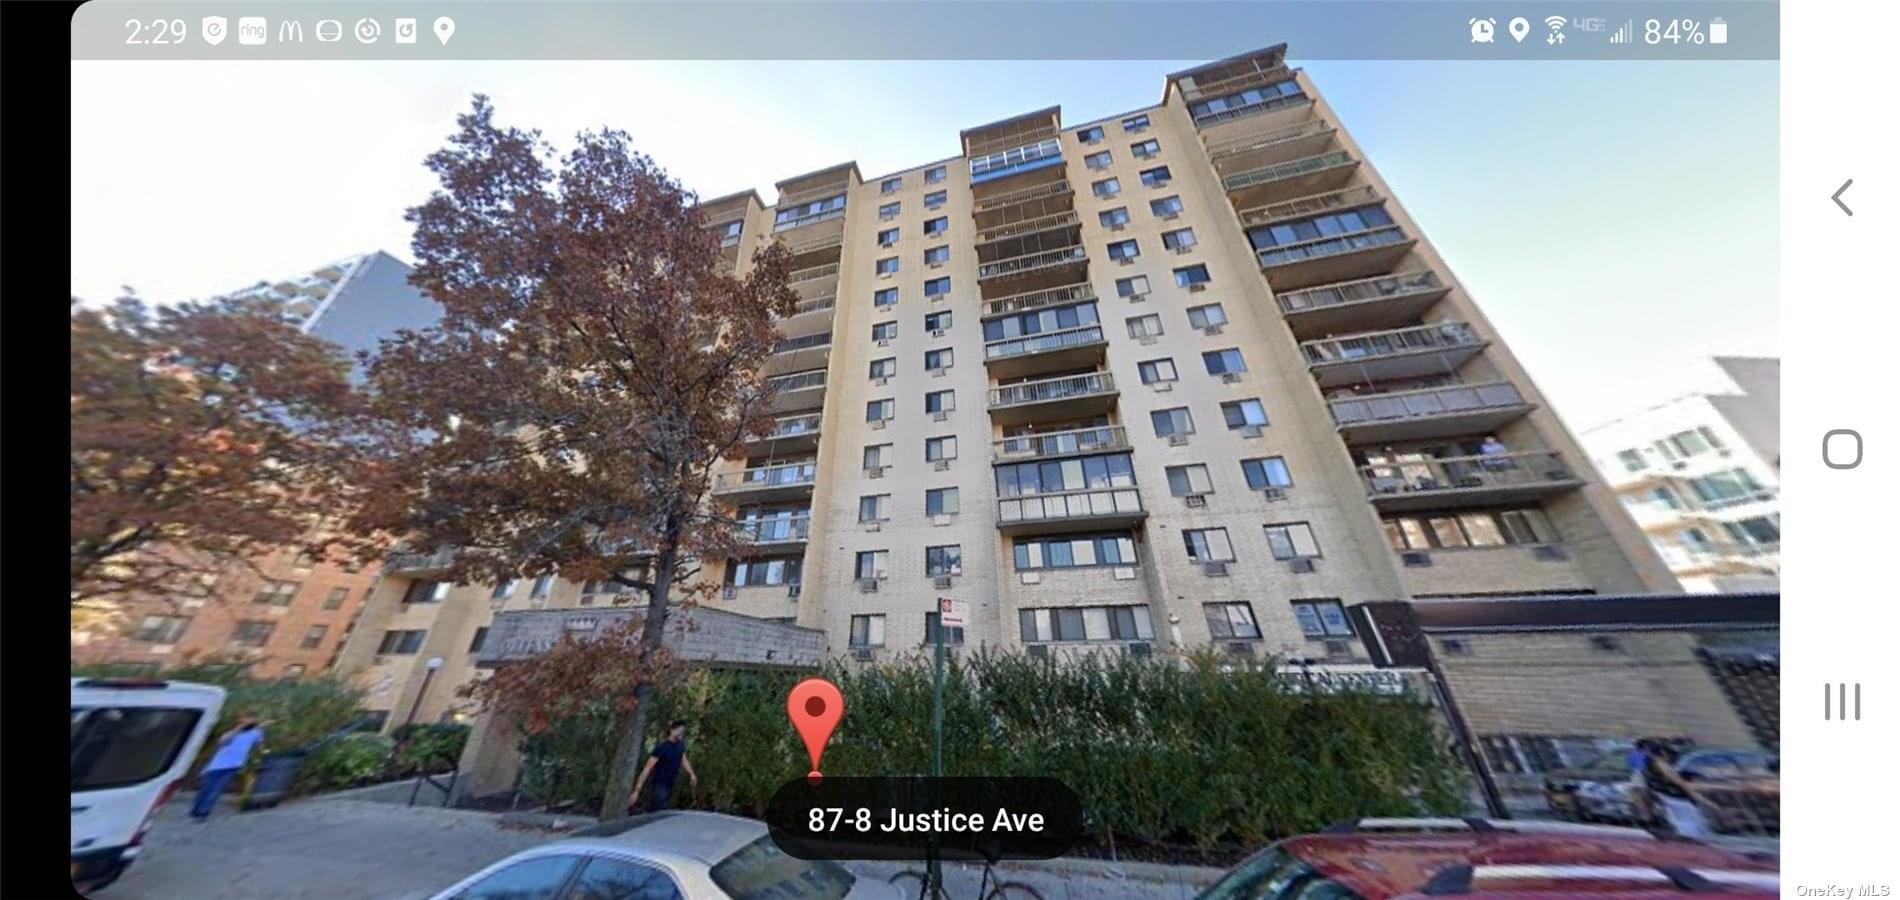 87-08 Justice Avenue #C5C6C7 in Queens, Elmhurst, NY 11373